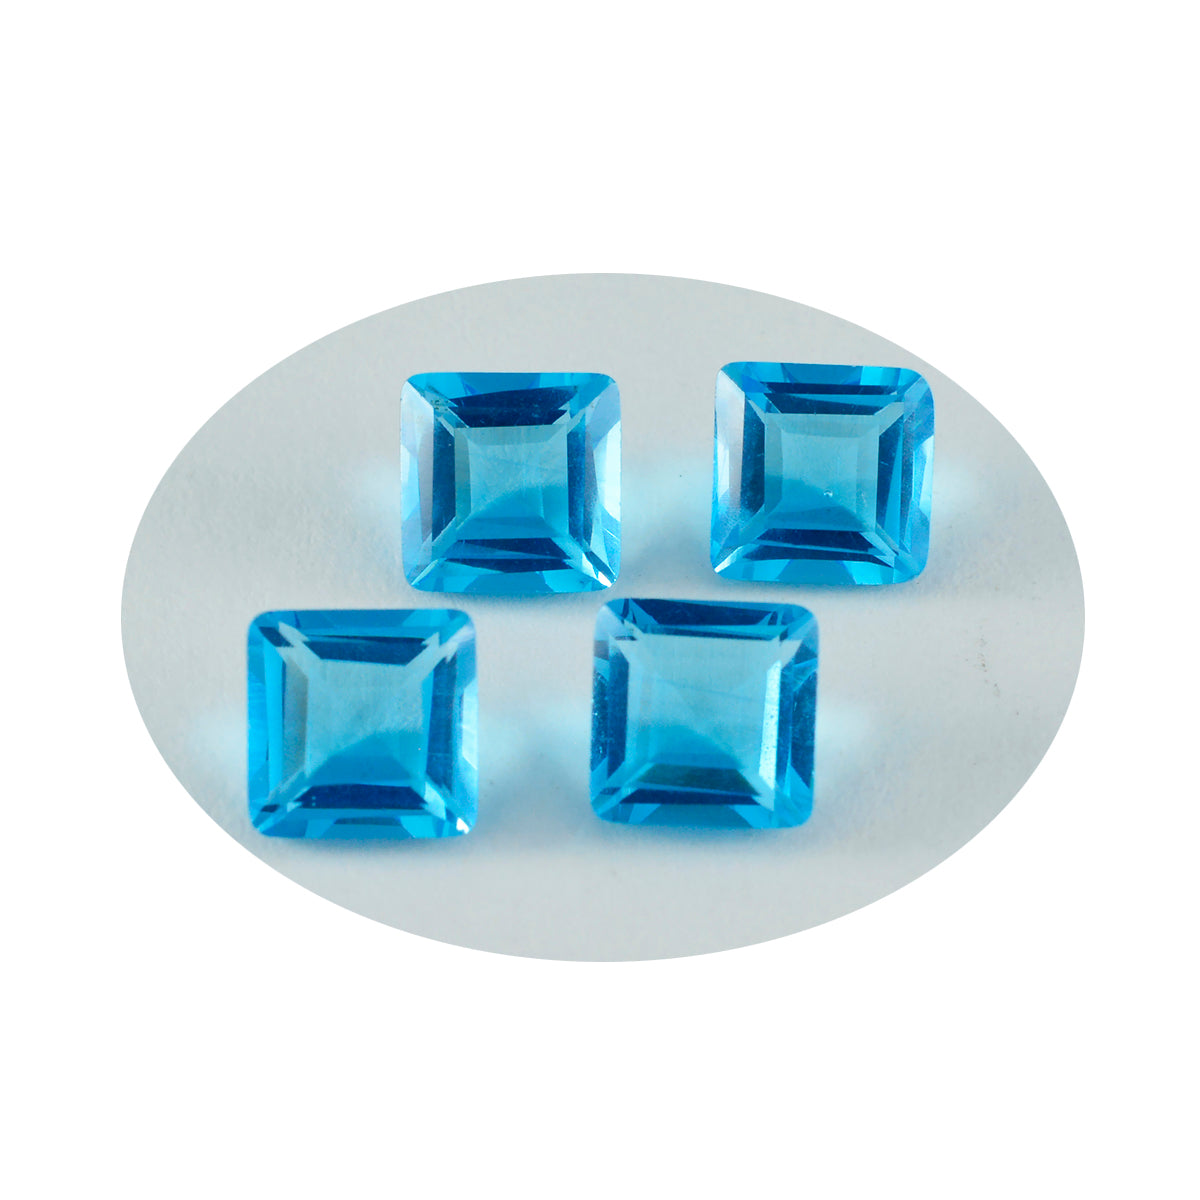 riyogems 1 шт. синий топаз cz ограненный 10x10 мм квадратной формы красивые качественные свободные драгоценные камни